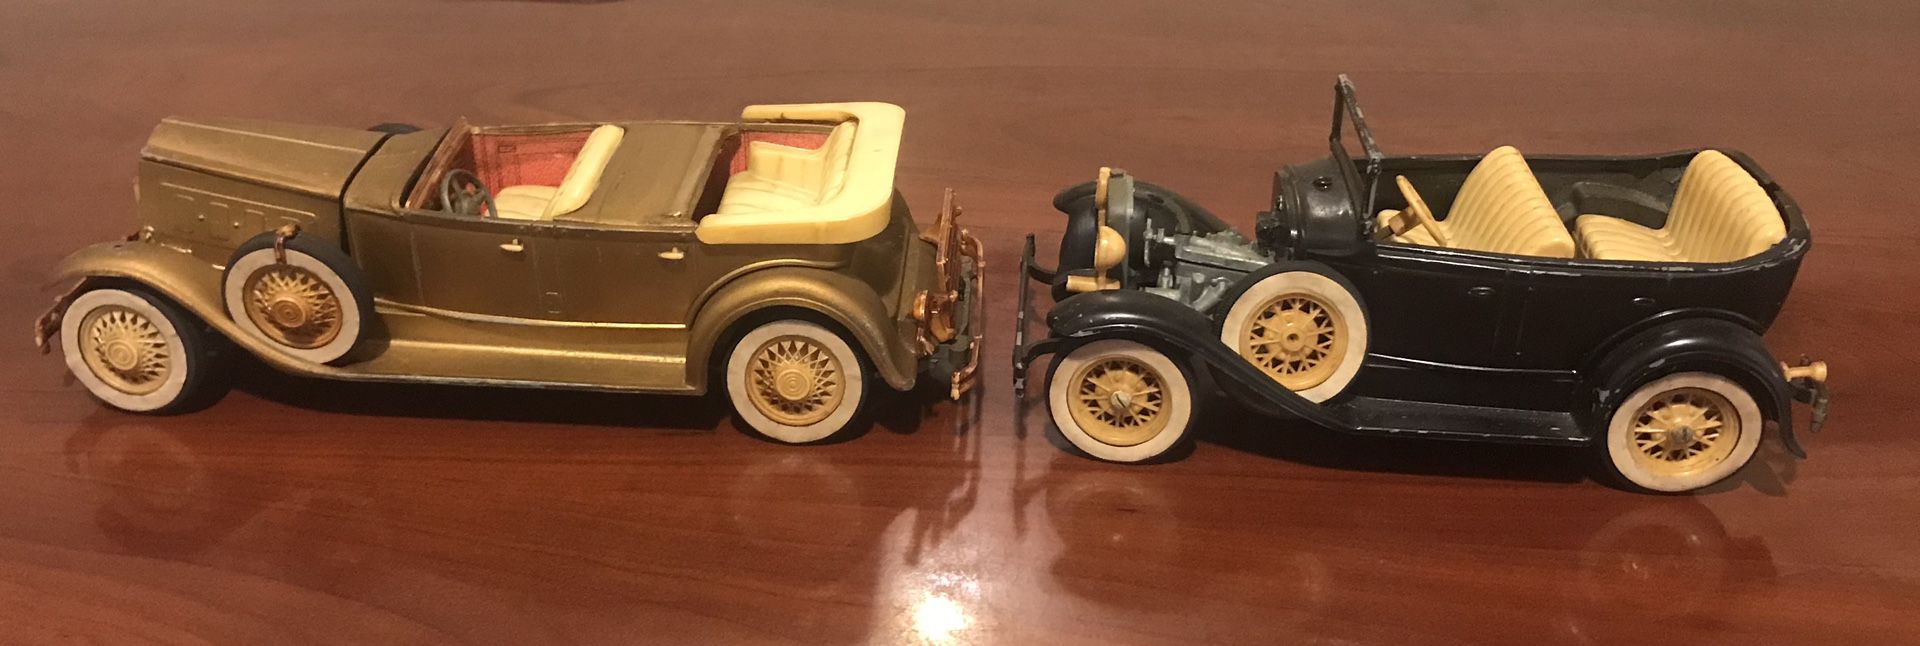 HUBLEY antique vintage toy cars